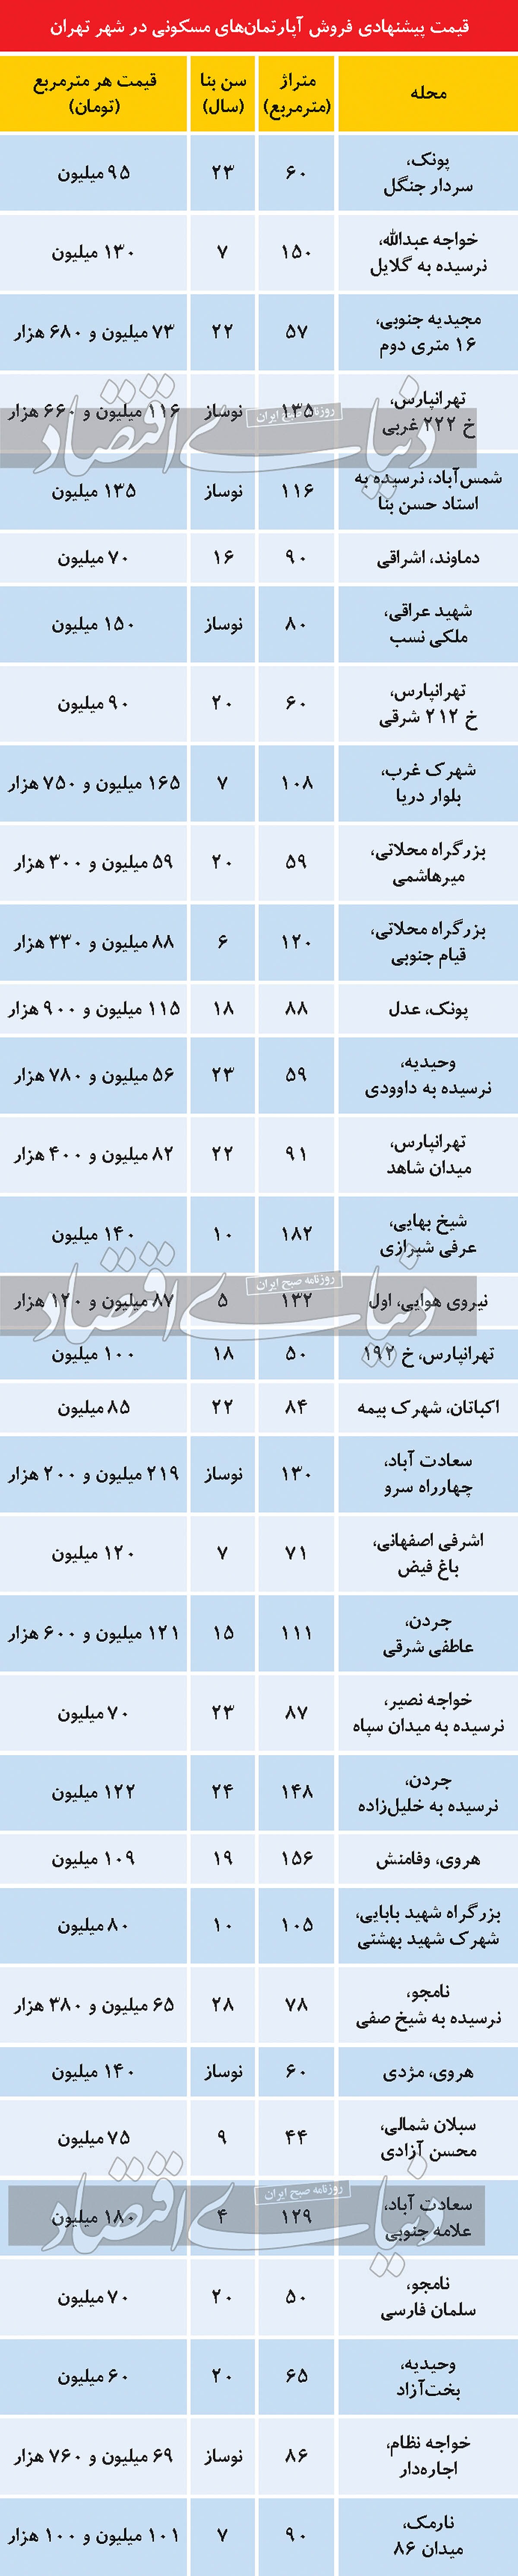 قیمت پیشنهادی فروش آپارتمان های مسکونی در تهران/ جدول